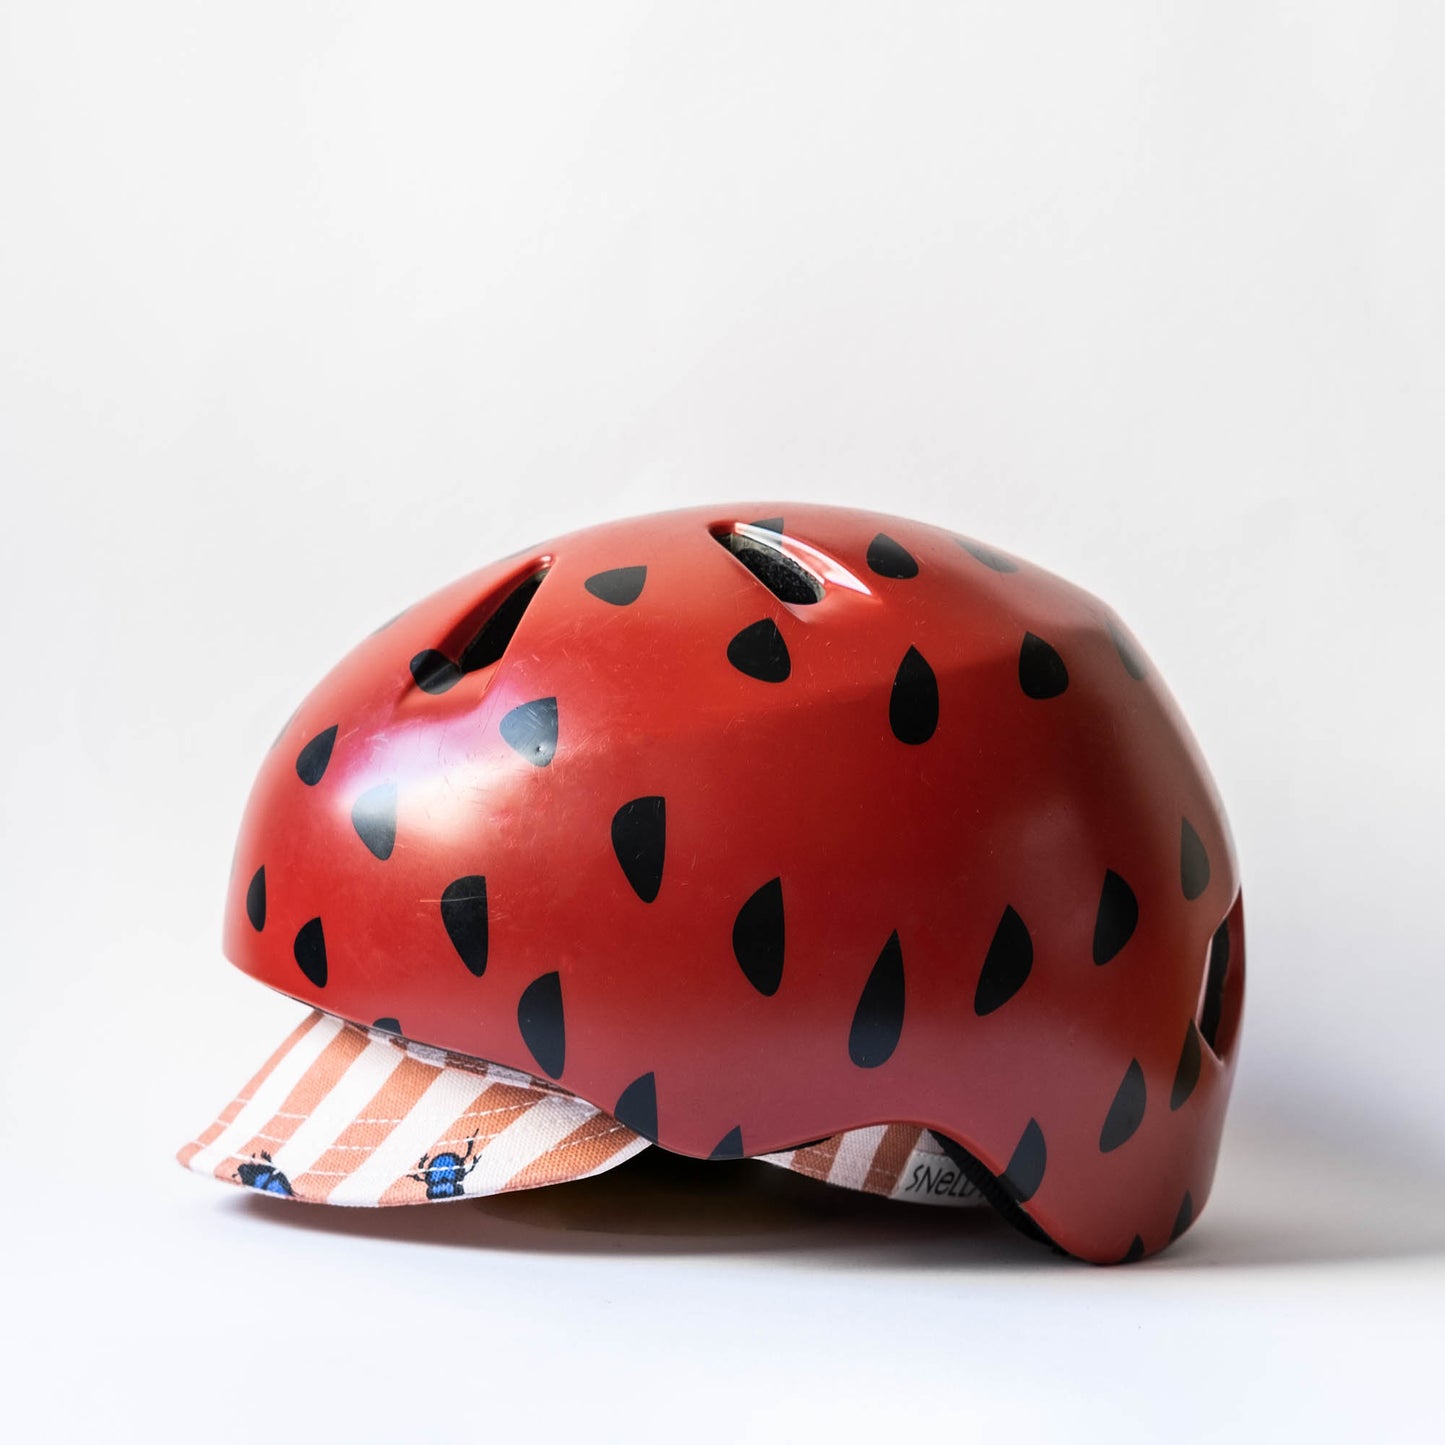 Beetle bike cap can be worn with helmet